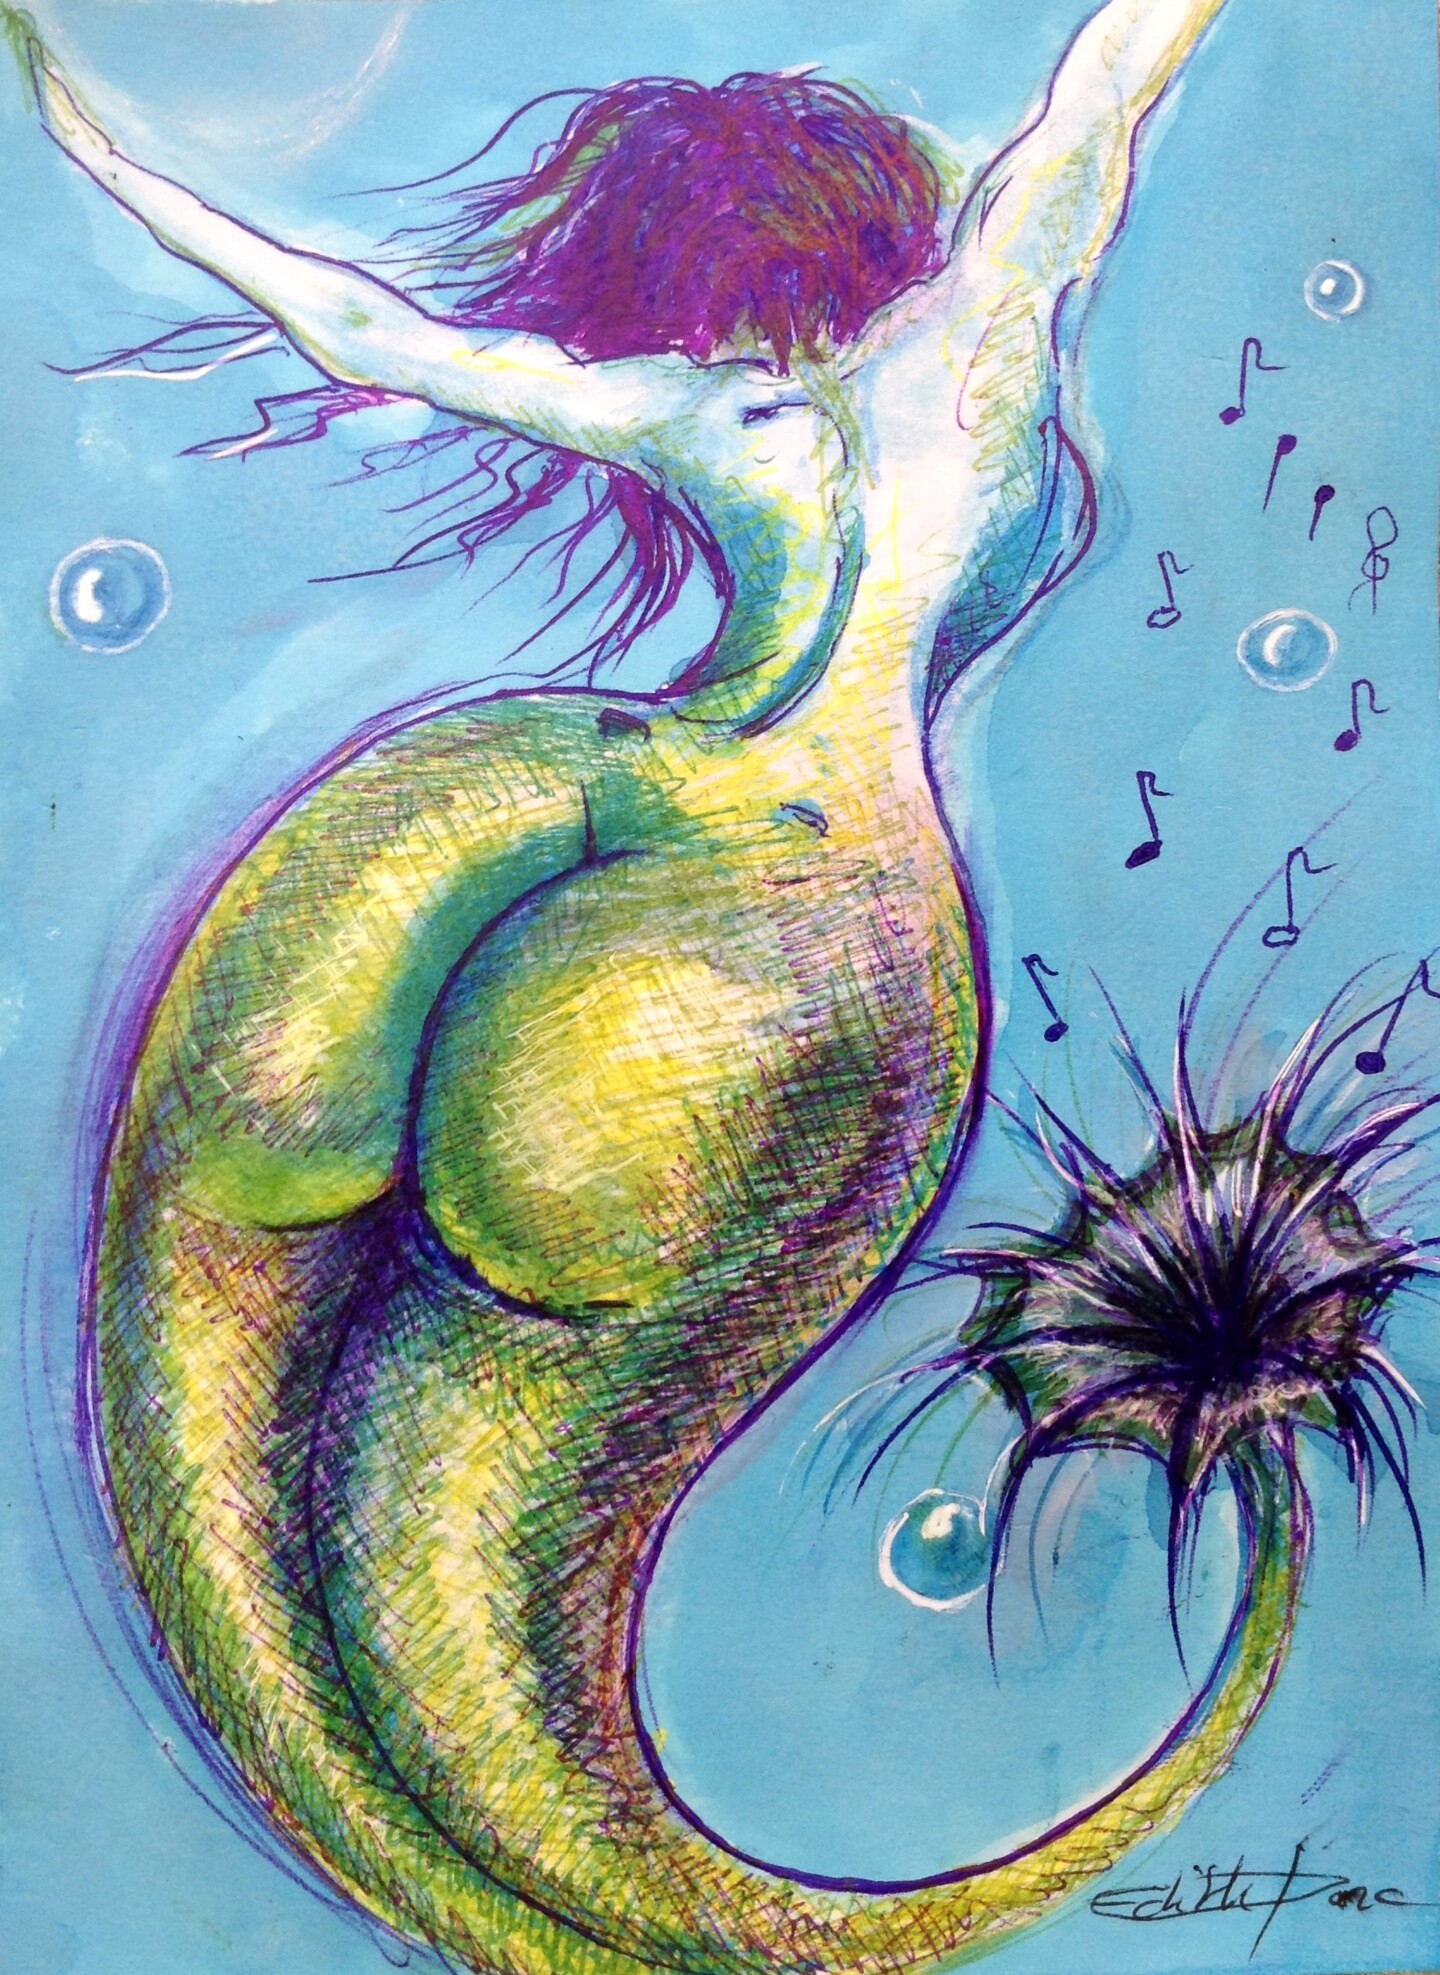 Edith Donc - Danseuse aquatique